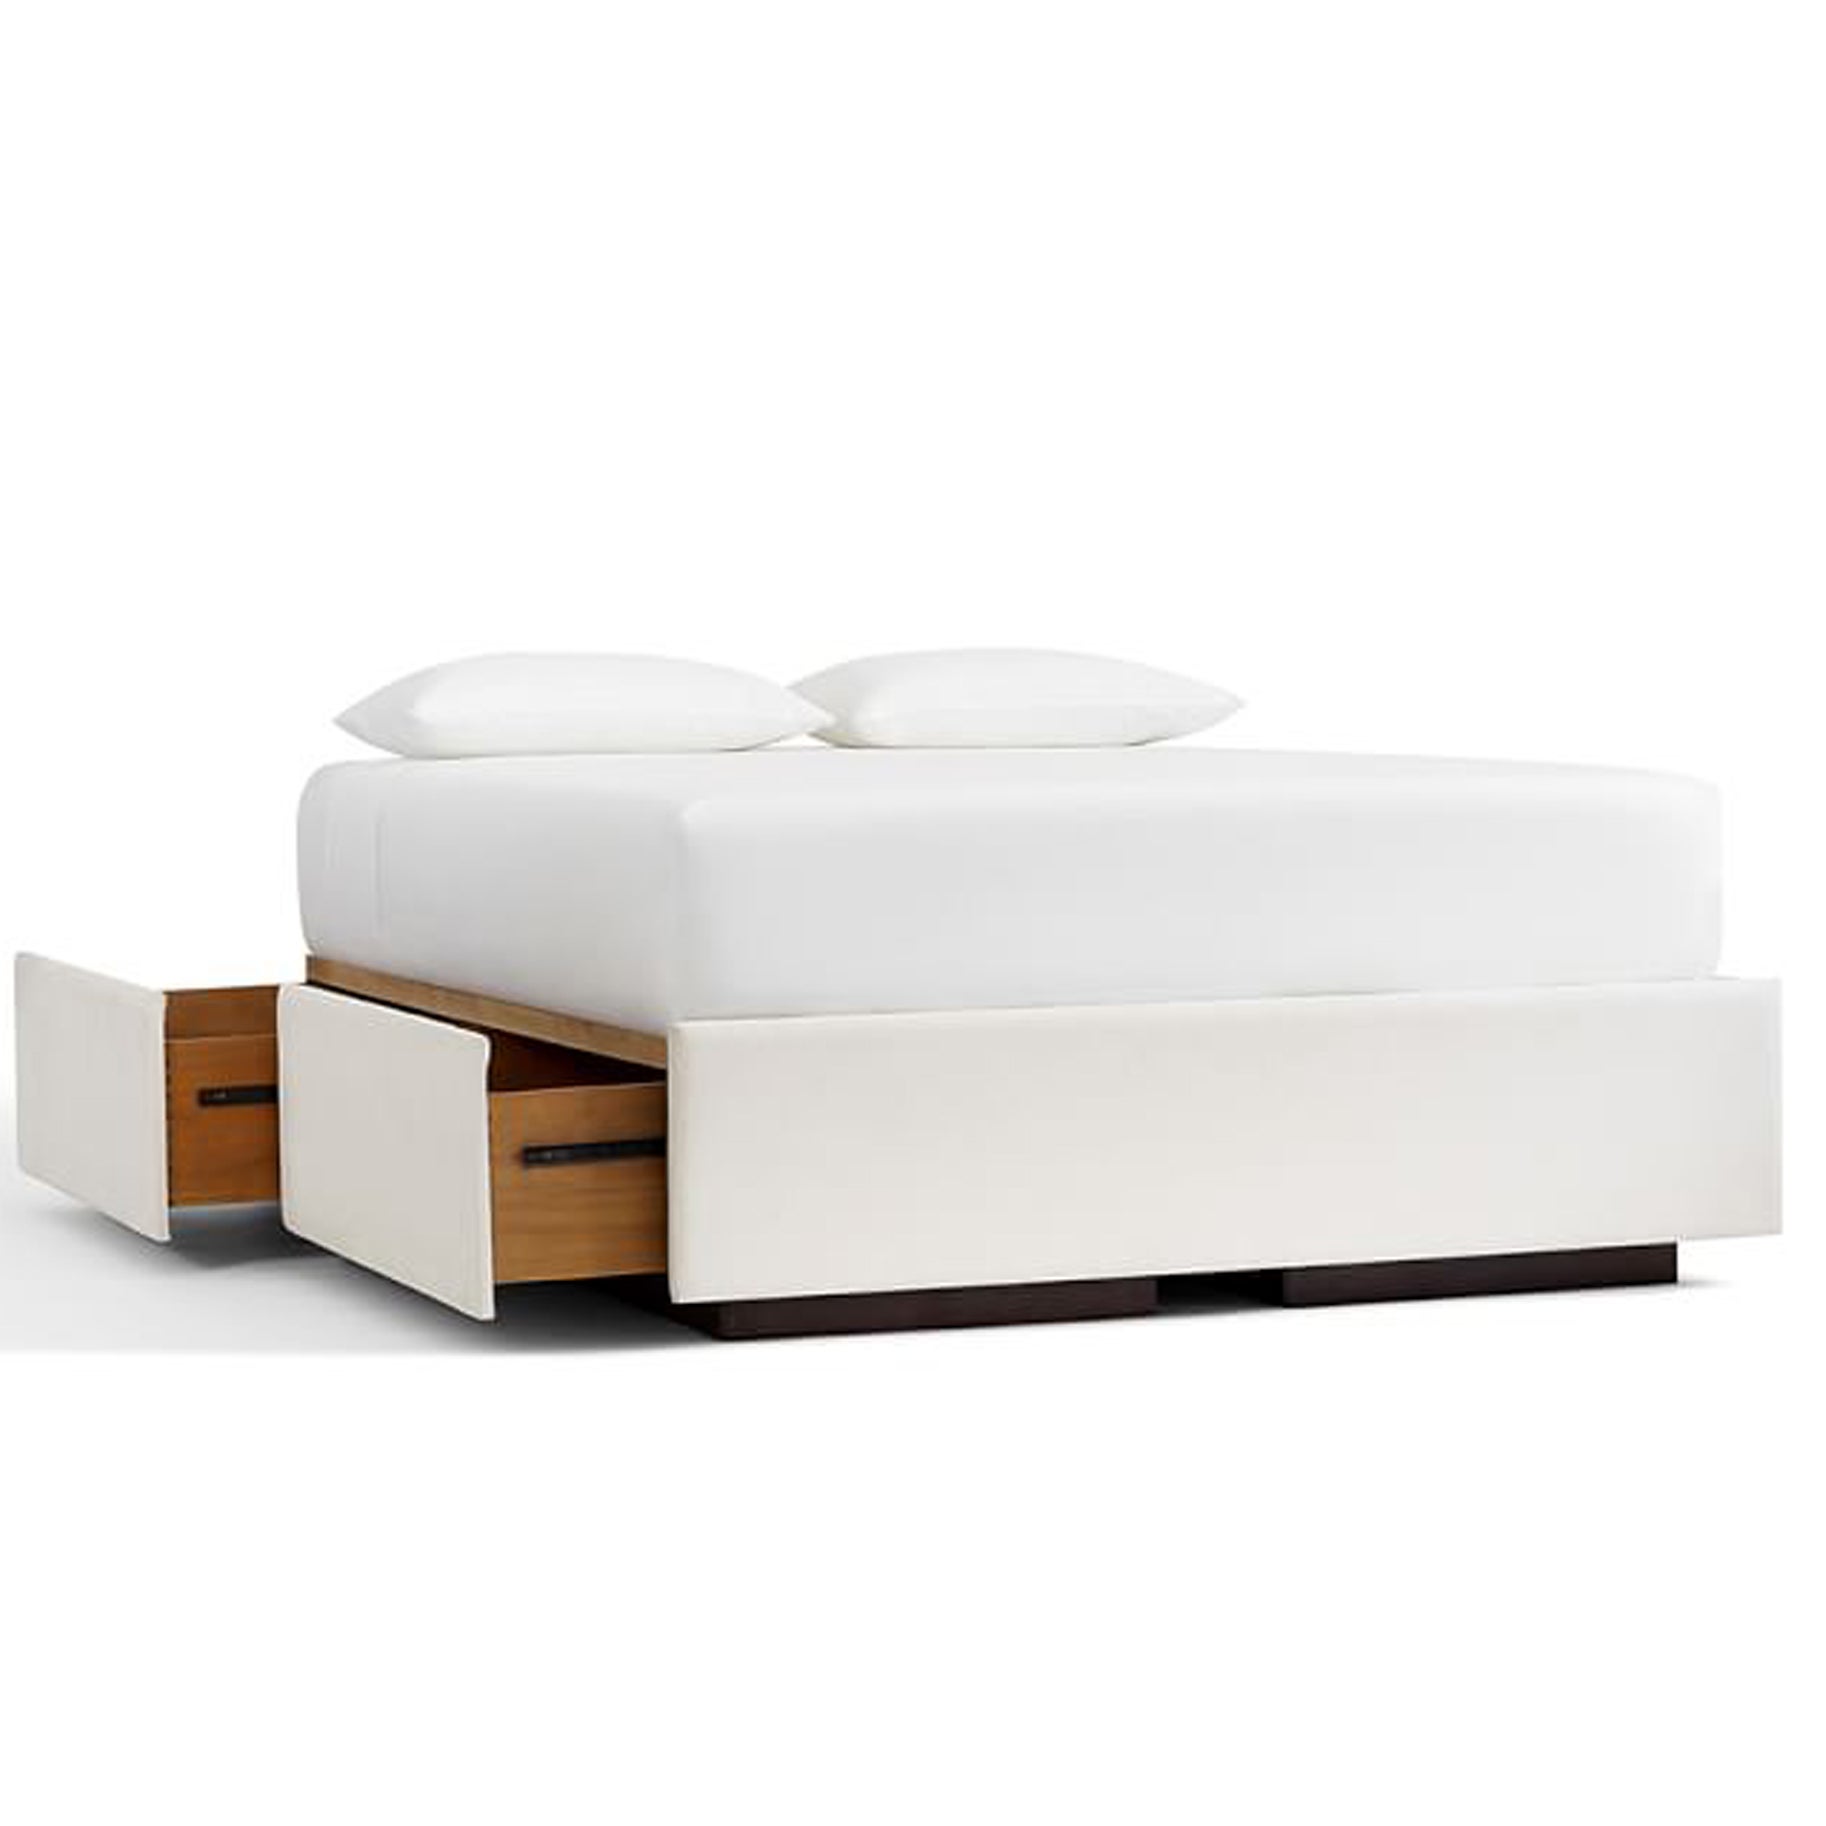 The Best Storage Beds Option: Pottery Barn Upholstered Storage Platform Bed